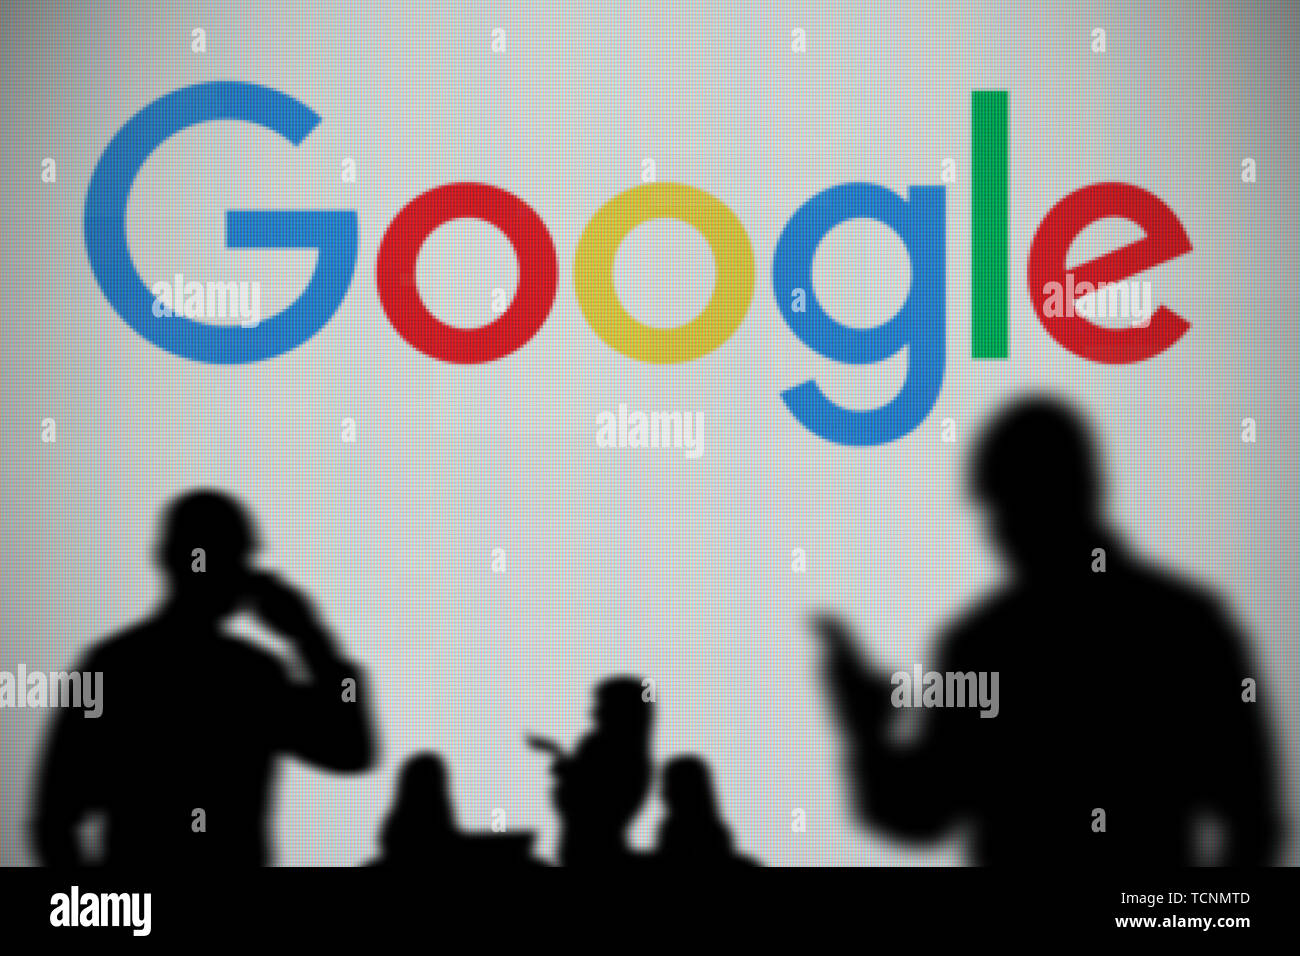 Le logo Google est vu sur un écran LED à l'arrière-plan tandis qu'une personne utilise la silhouette d'un smartphone dans l'avant-plan (usage éditorial uniquement) Banque D'Images